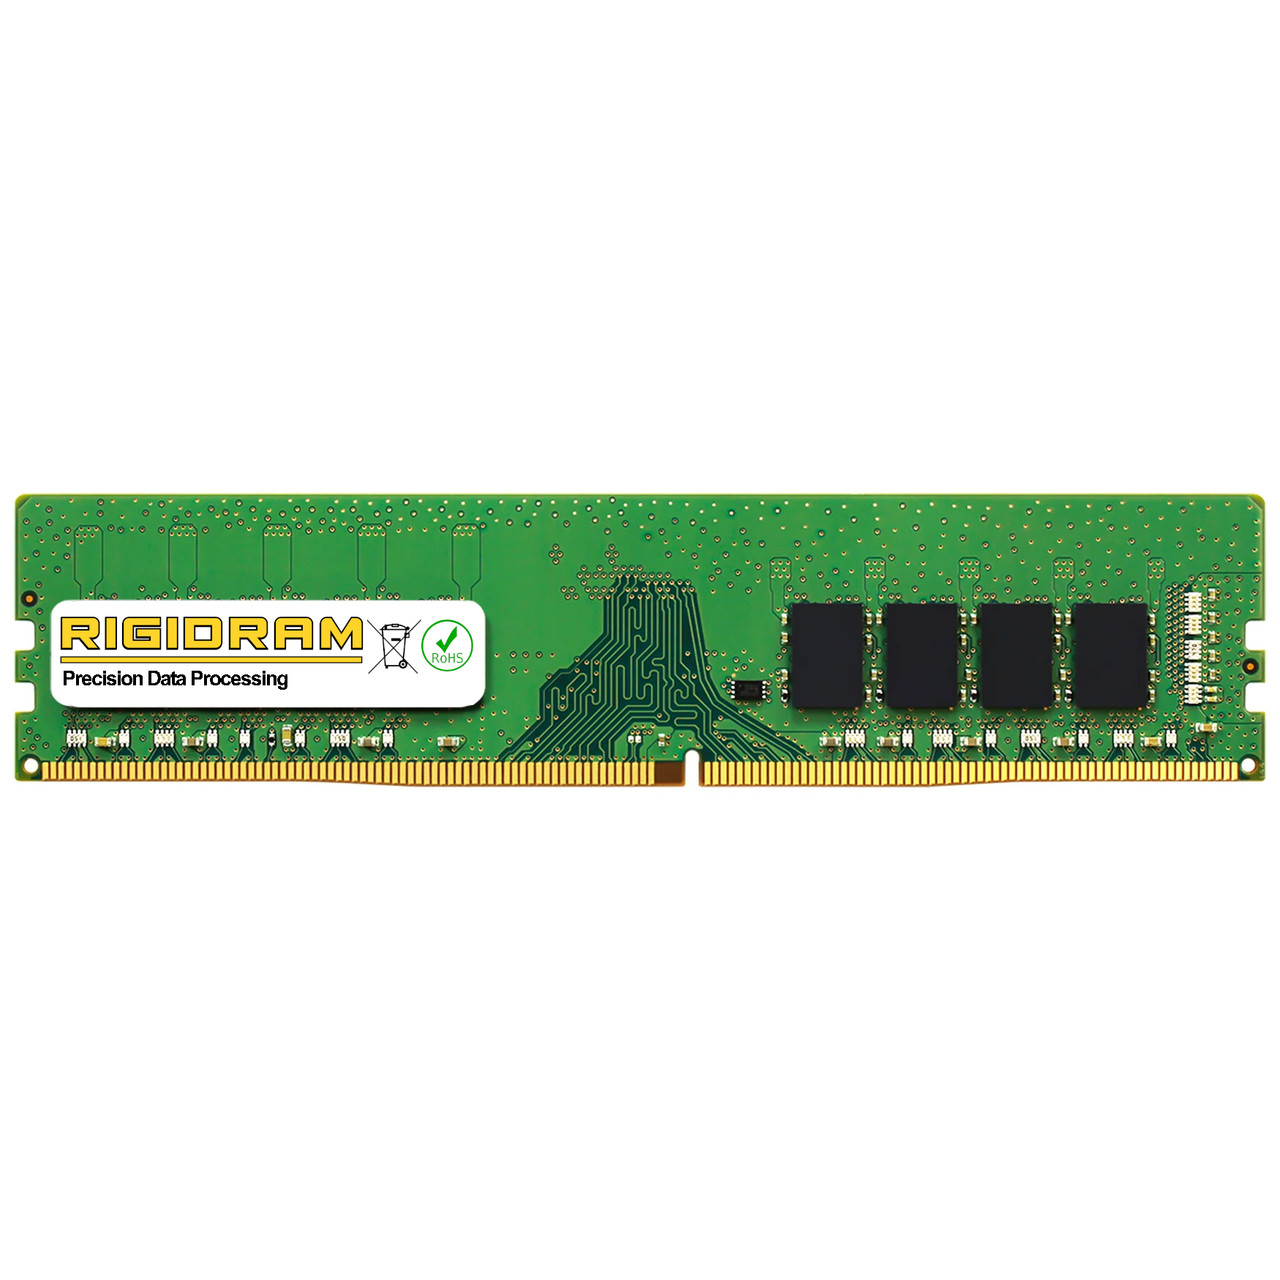 16GB RAM Lenovo ThinkCentre V530 15ARR 10Y3 4X70R38788 DDR4 2666 Udimm Memory by RigidRAM Upgrades